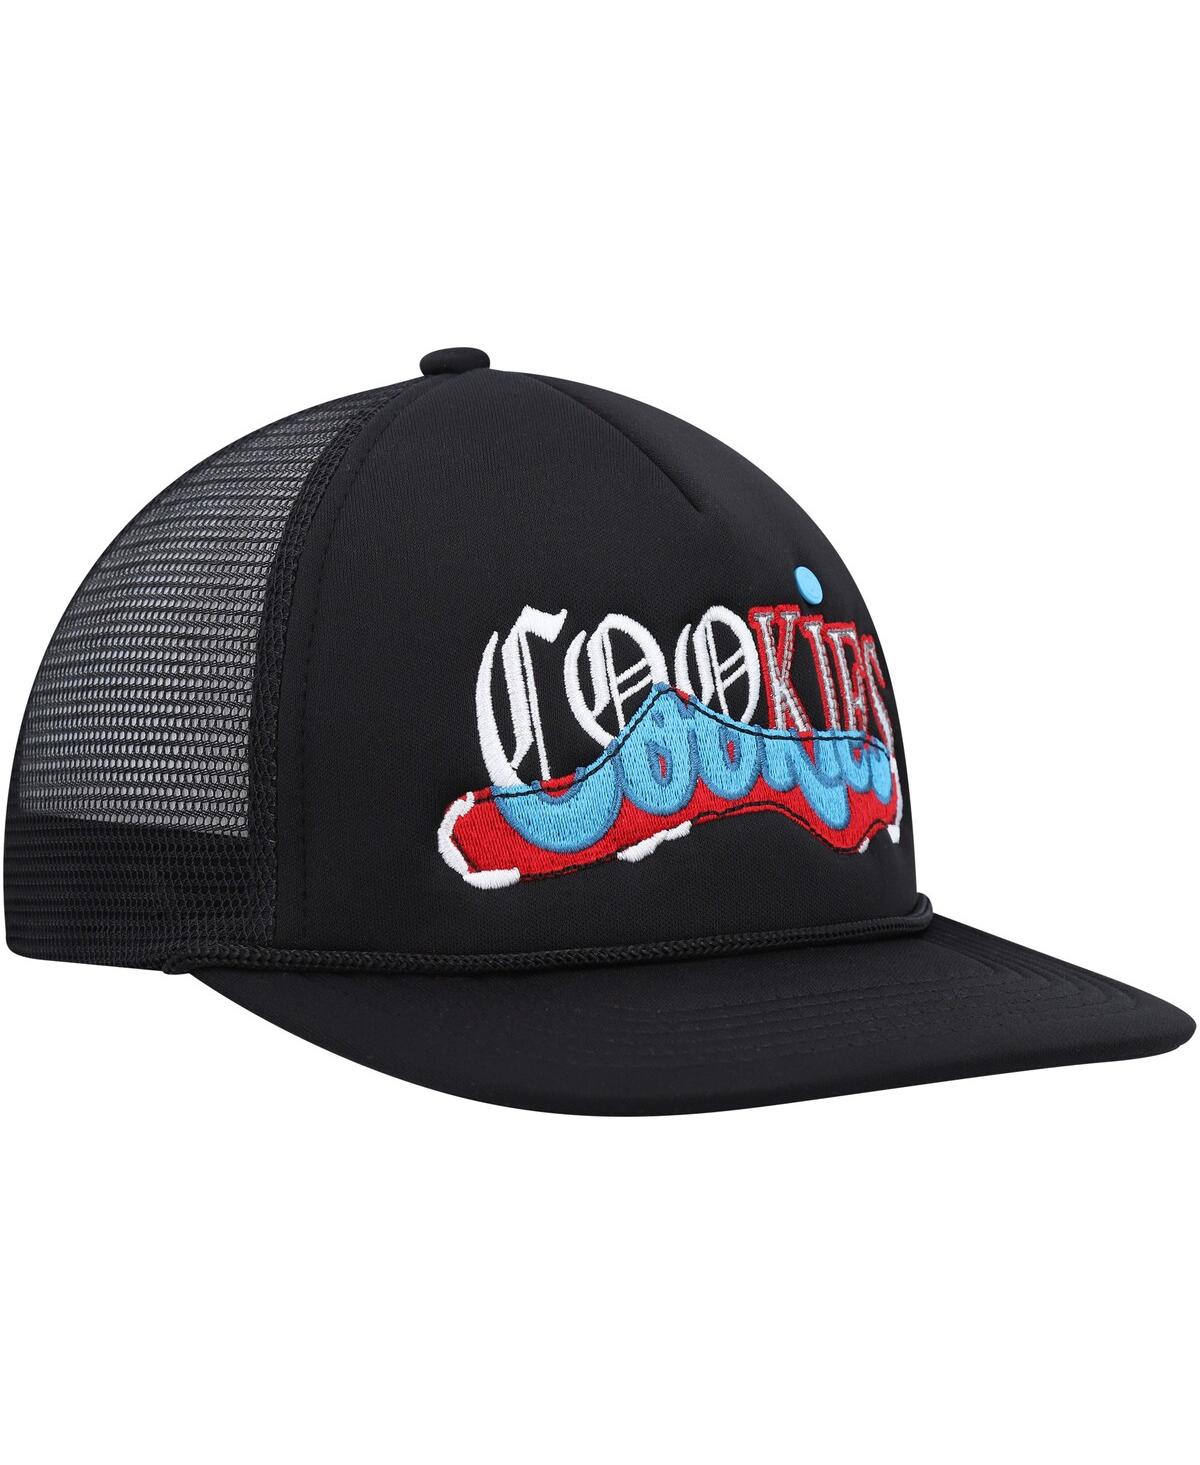 Shop Cookies Men's  Black Upper Echelon Trucker Snapback Hat